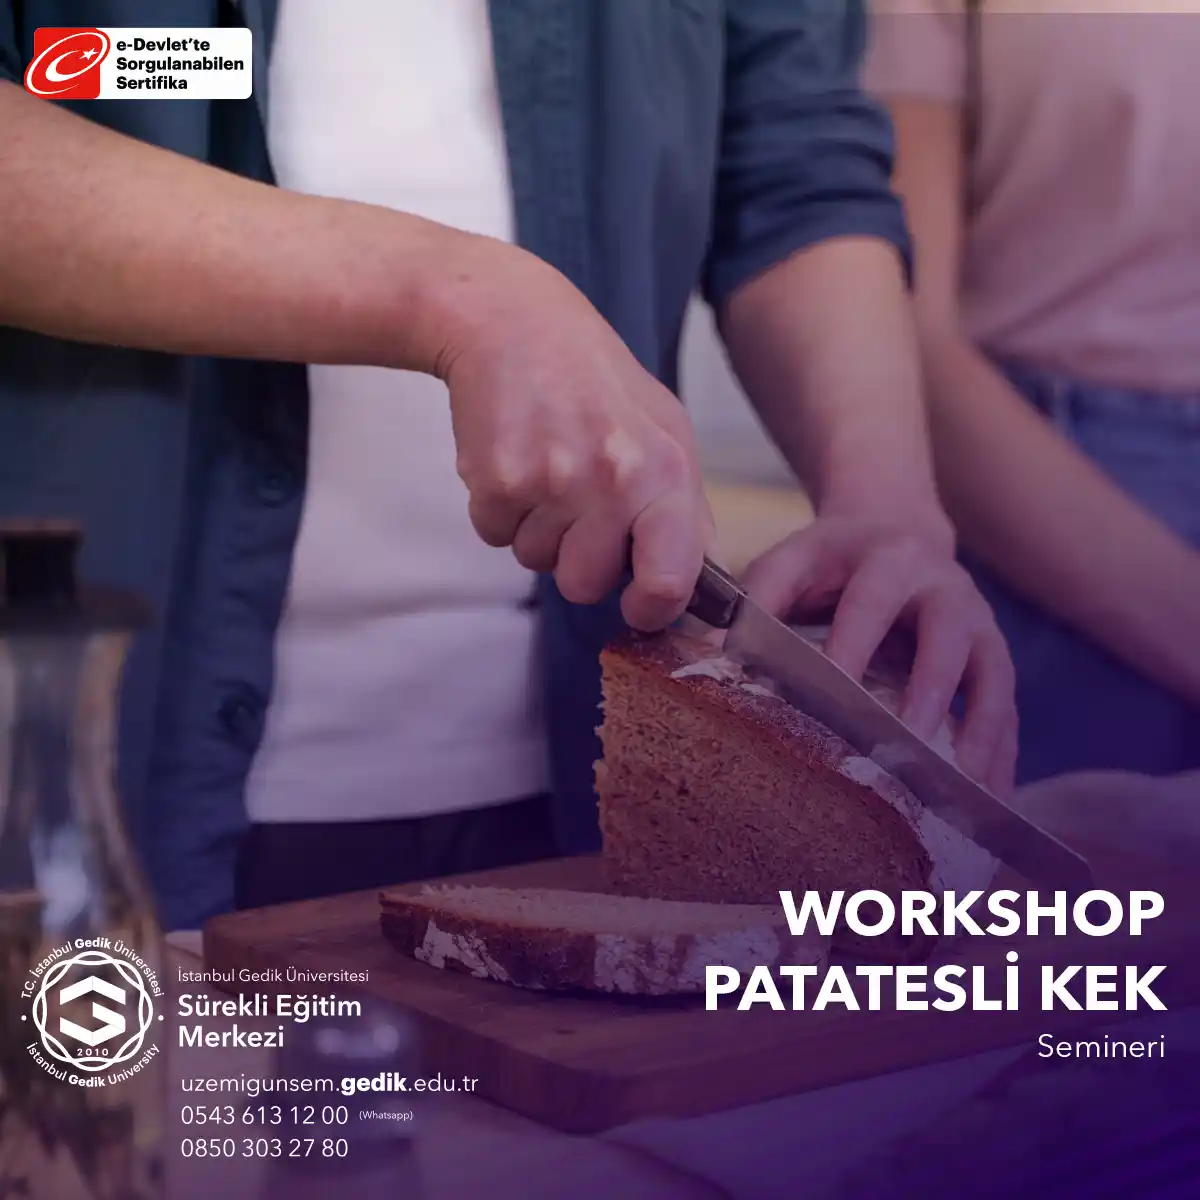 Patatesli Kek Workshop, farklı kek tarifleri denemek isteyen kişilere veya mutfak becerilerini geliştirmek isteyenlere yönelik keyifli bir eğitimdir. 